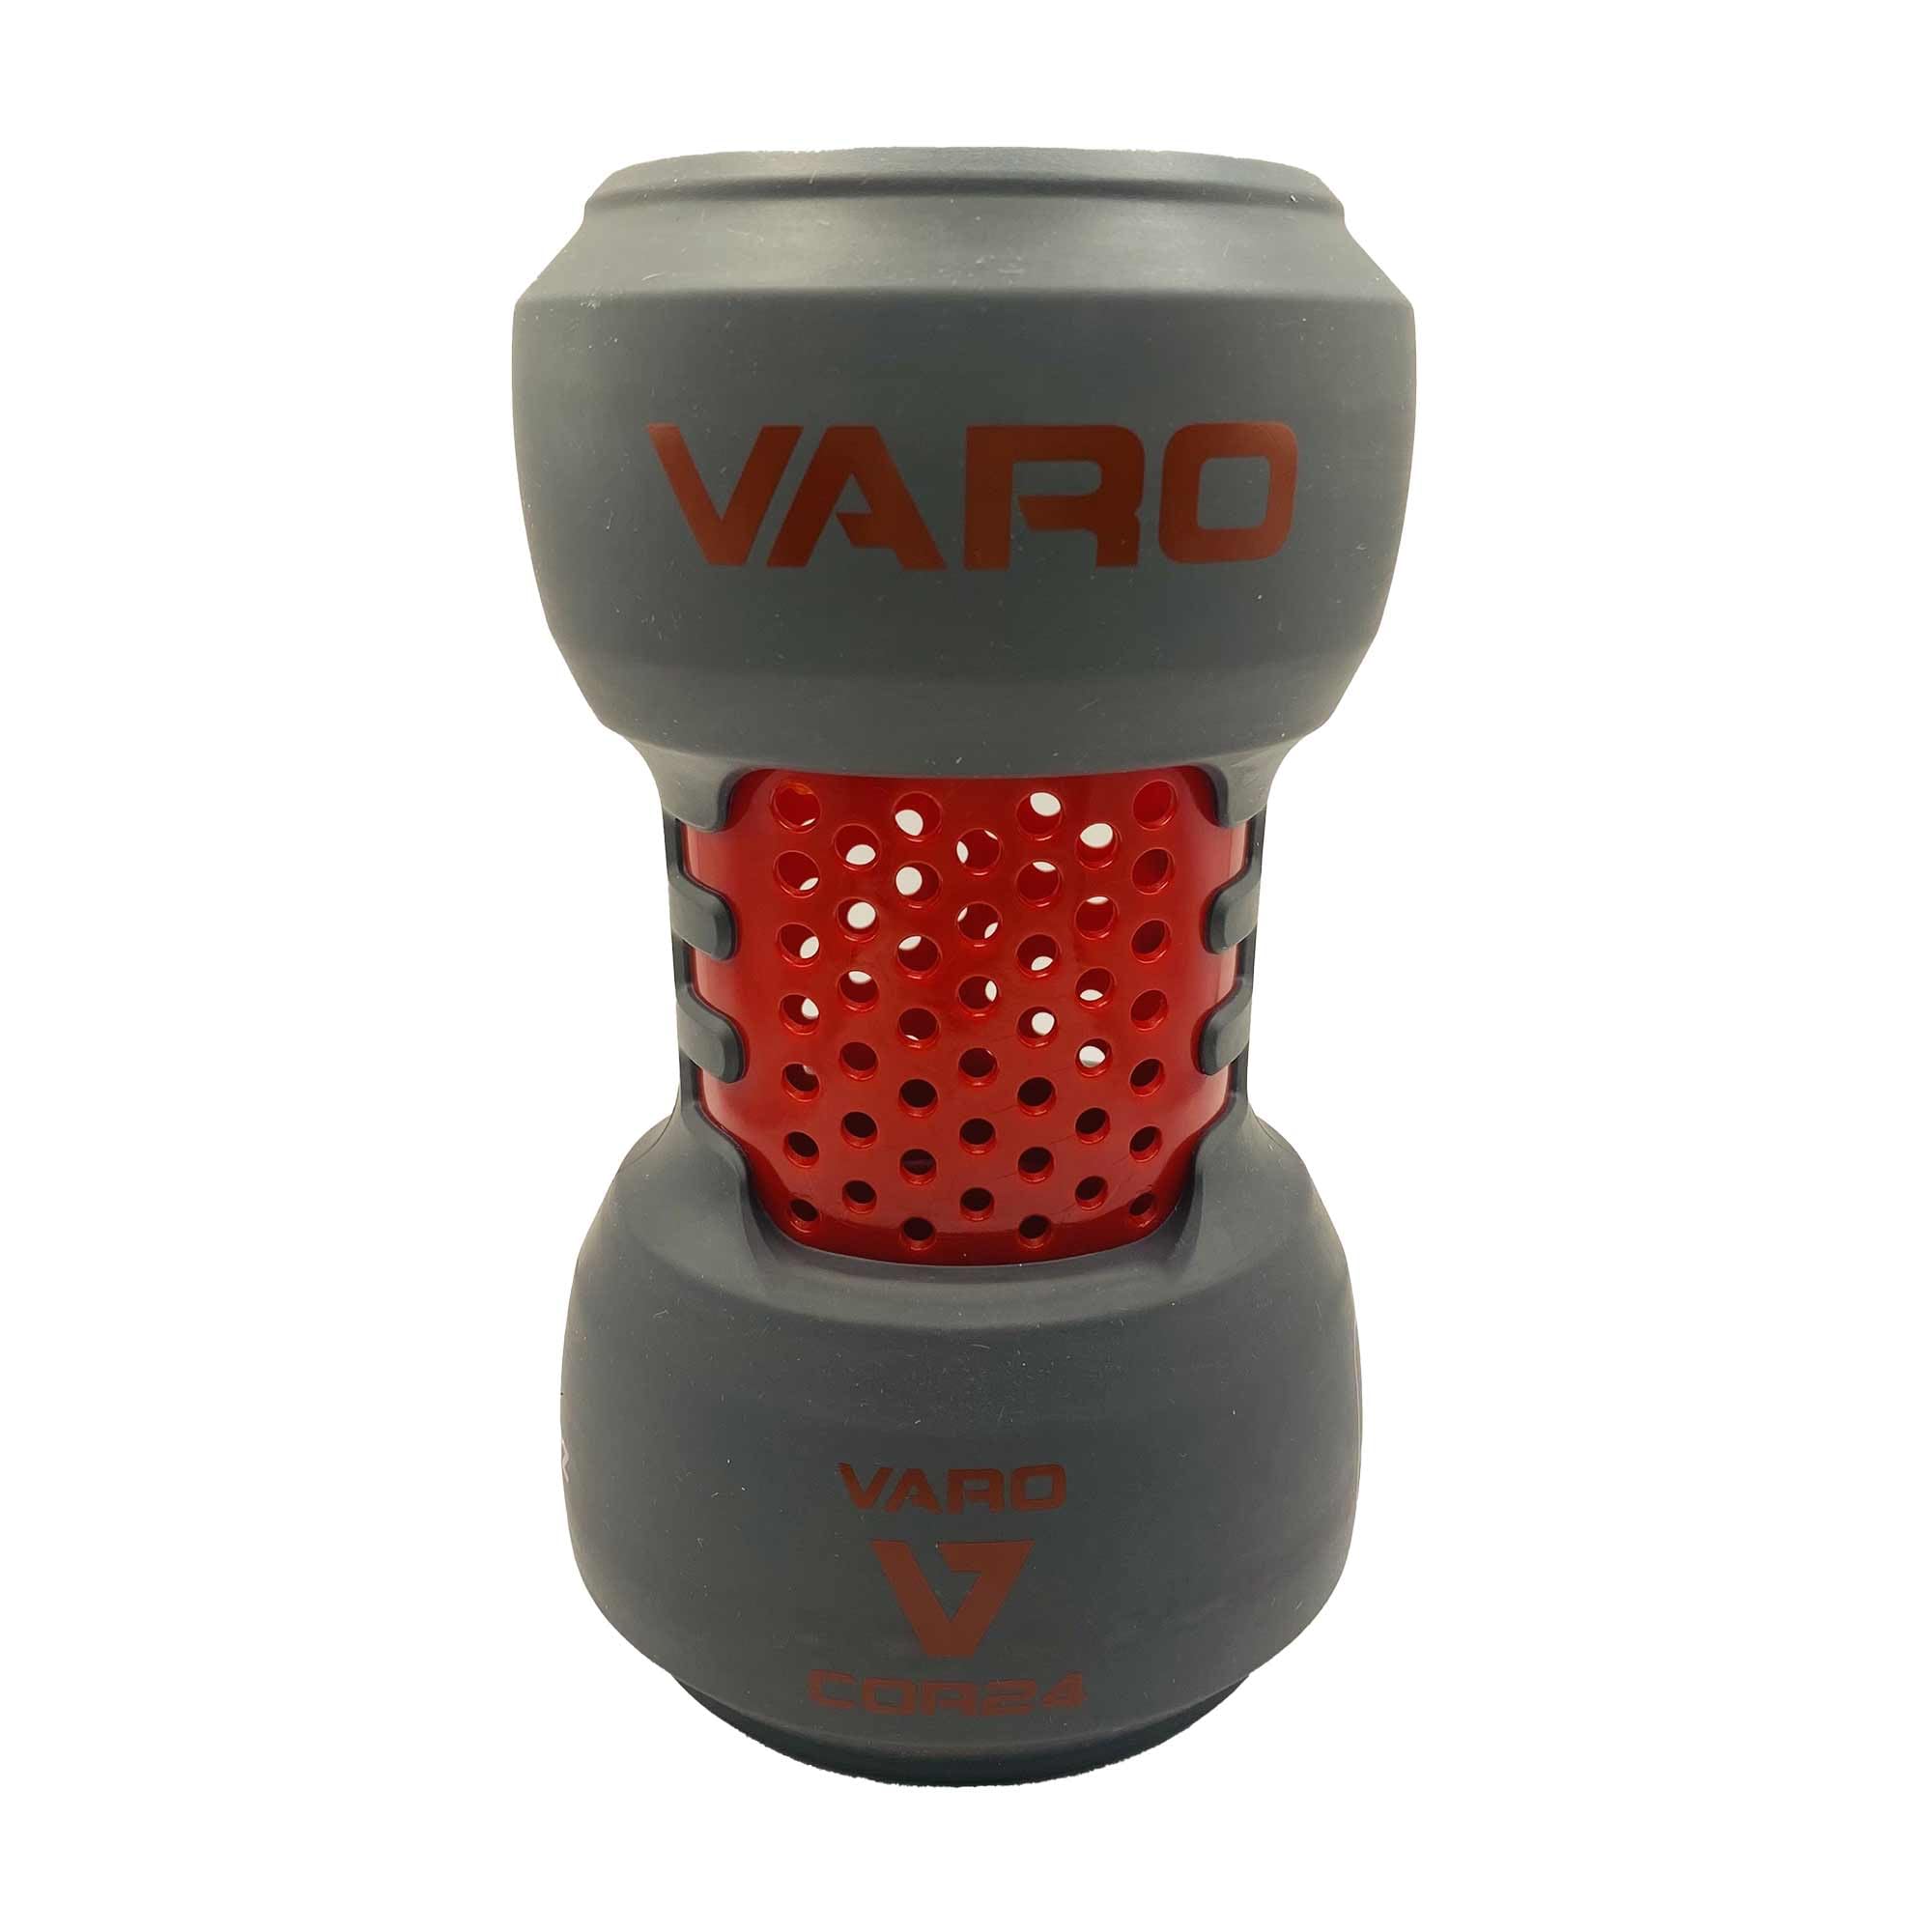 Varo COR Schläger-Trainingsgewicht, 680 g, für Baseball (MLB Authentic) – klassisches Gewichtsgefühl – verbessern Sie Ihre Schwünge und Kraft, gepolsterte Passform eliminiert Abrieb am Schläger,